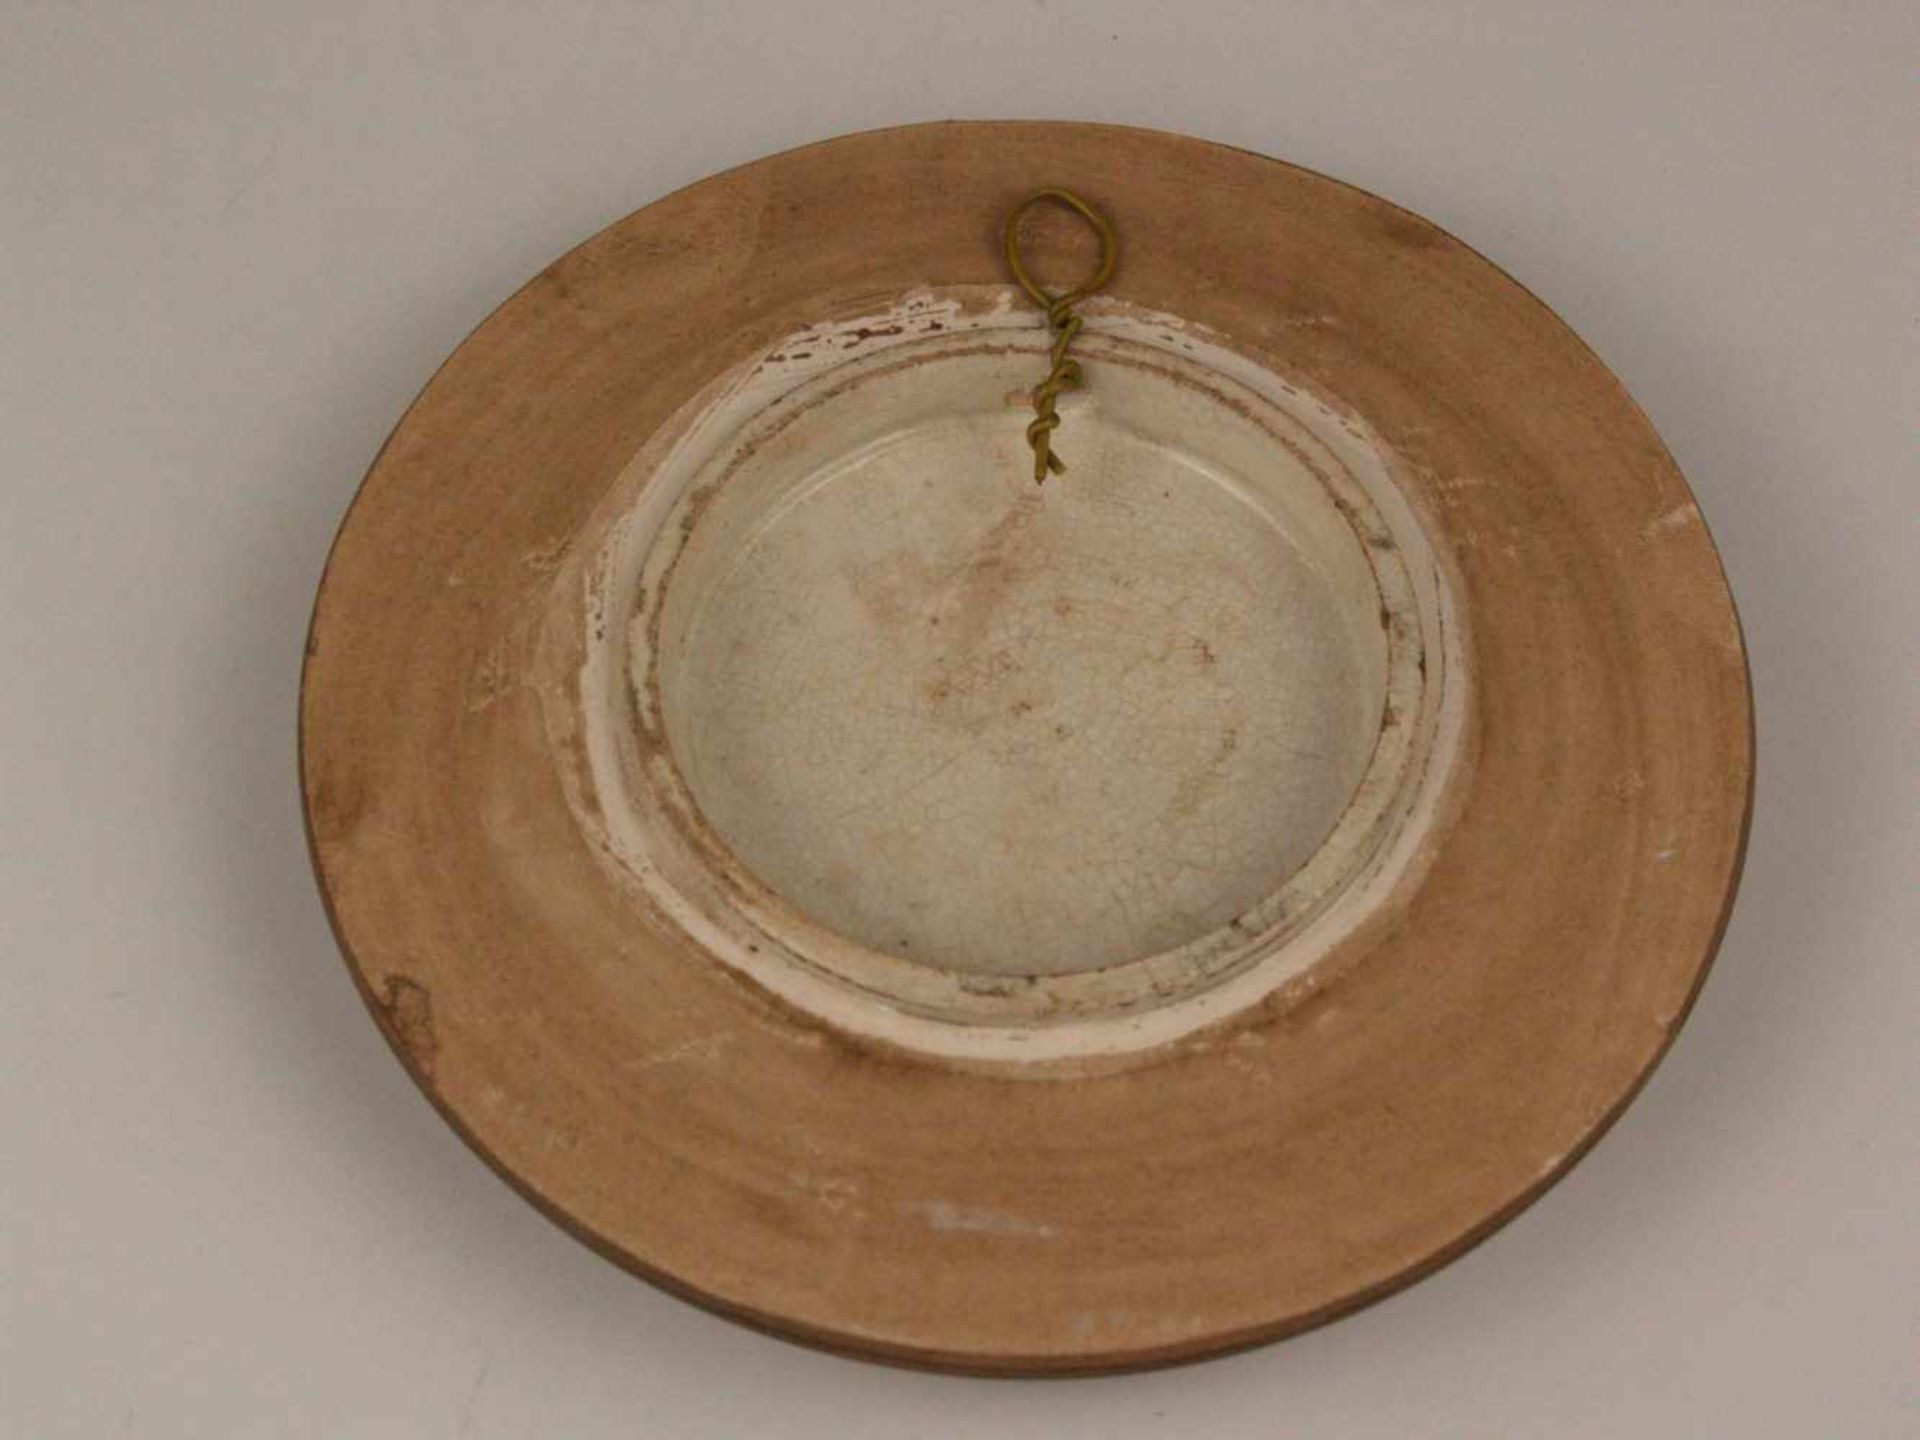 Viktorianischer Keramikdeckel - England 19.Jh., leicht gewölbter Gefäßdeckel mit farbiger - Bild 4 aus 4